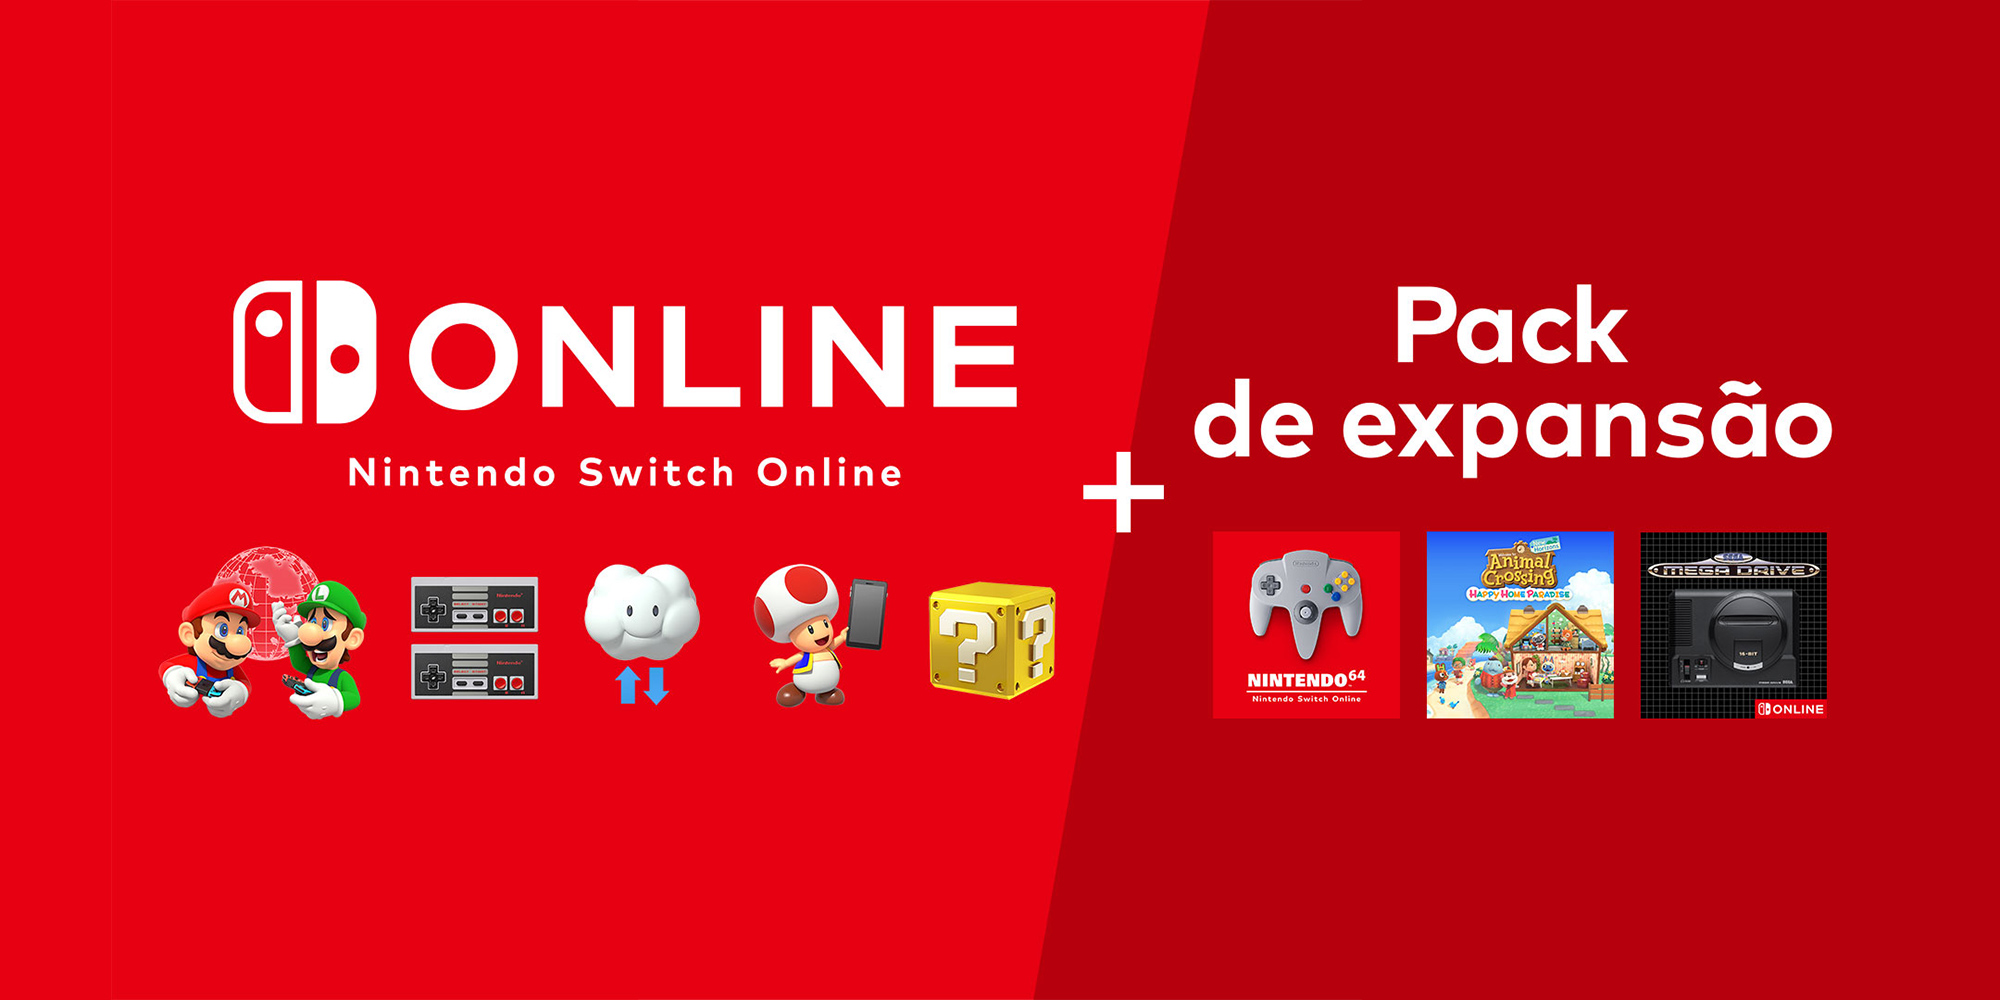 Descobre o Nintendo Switch Online + Pack de expansão!